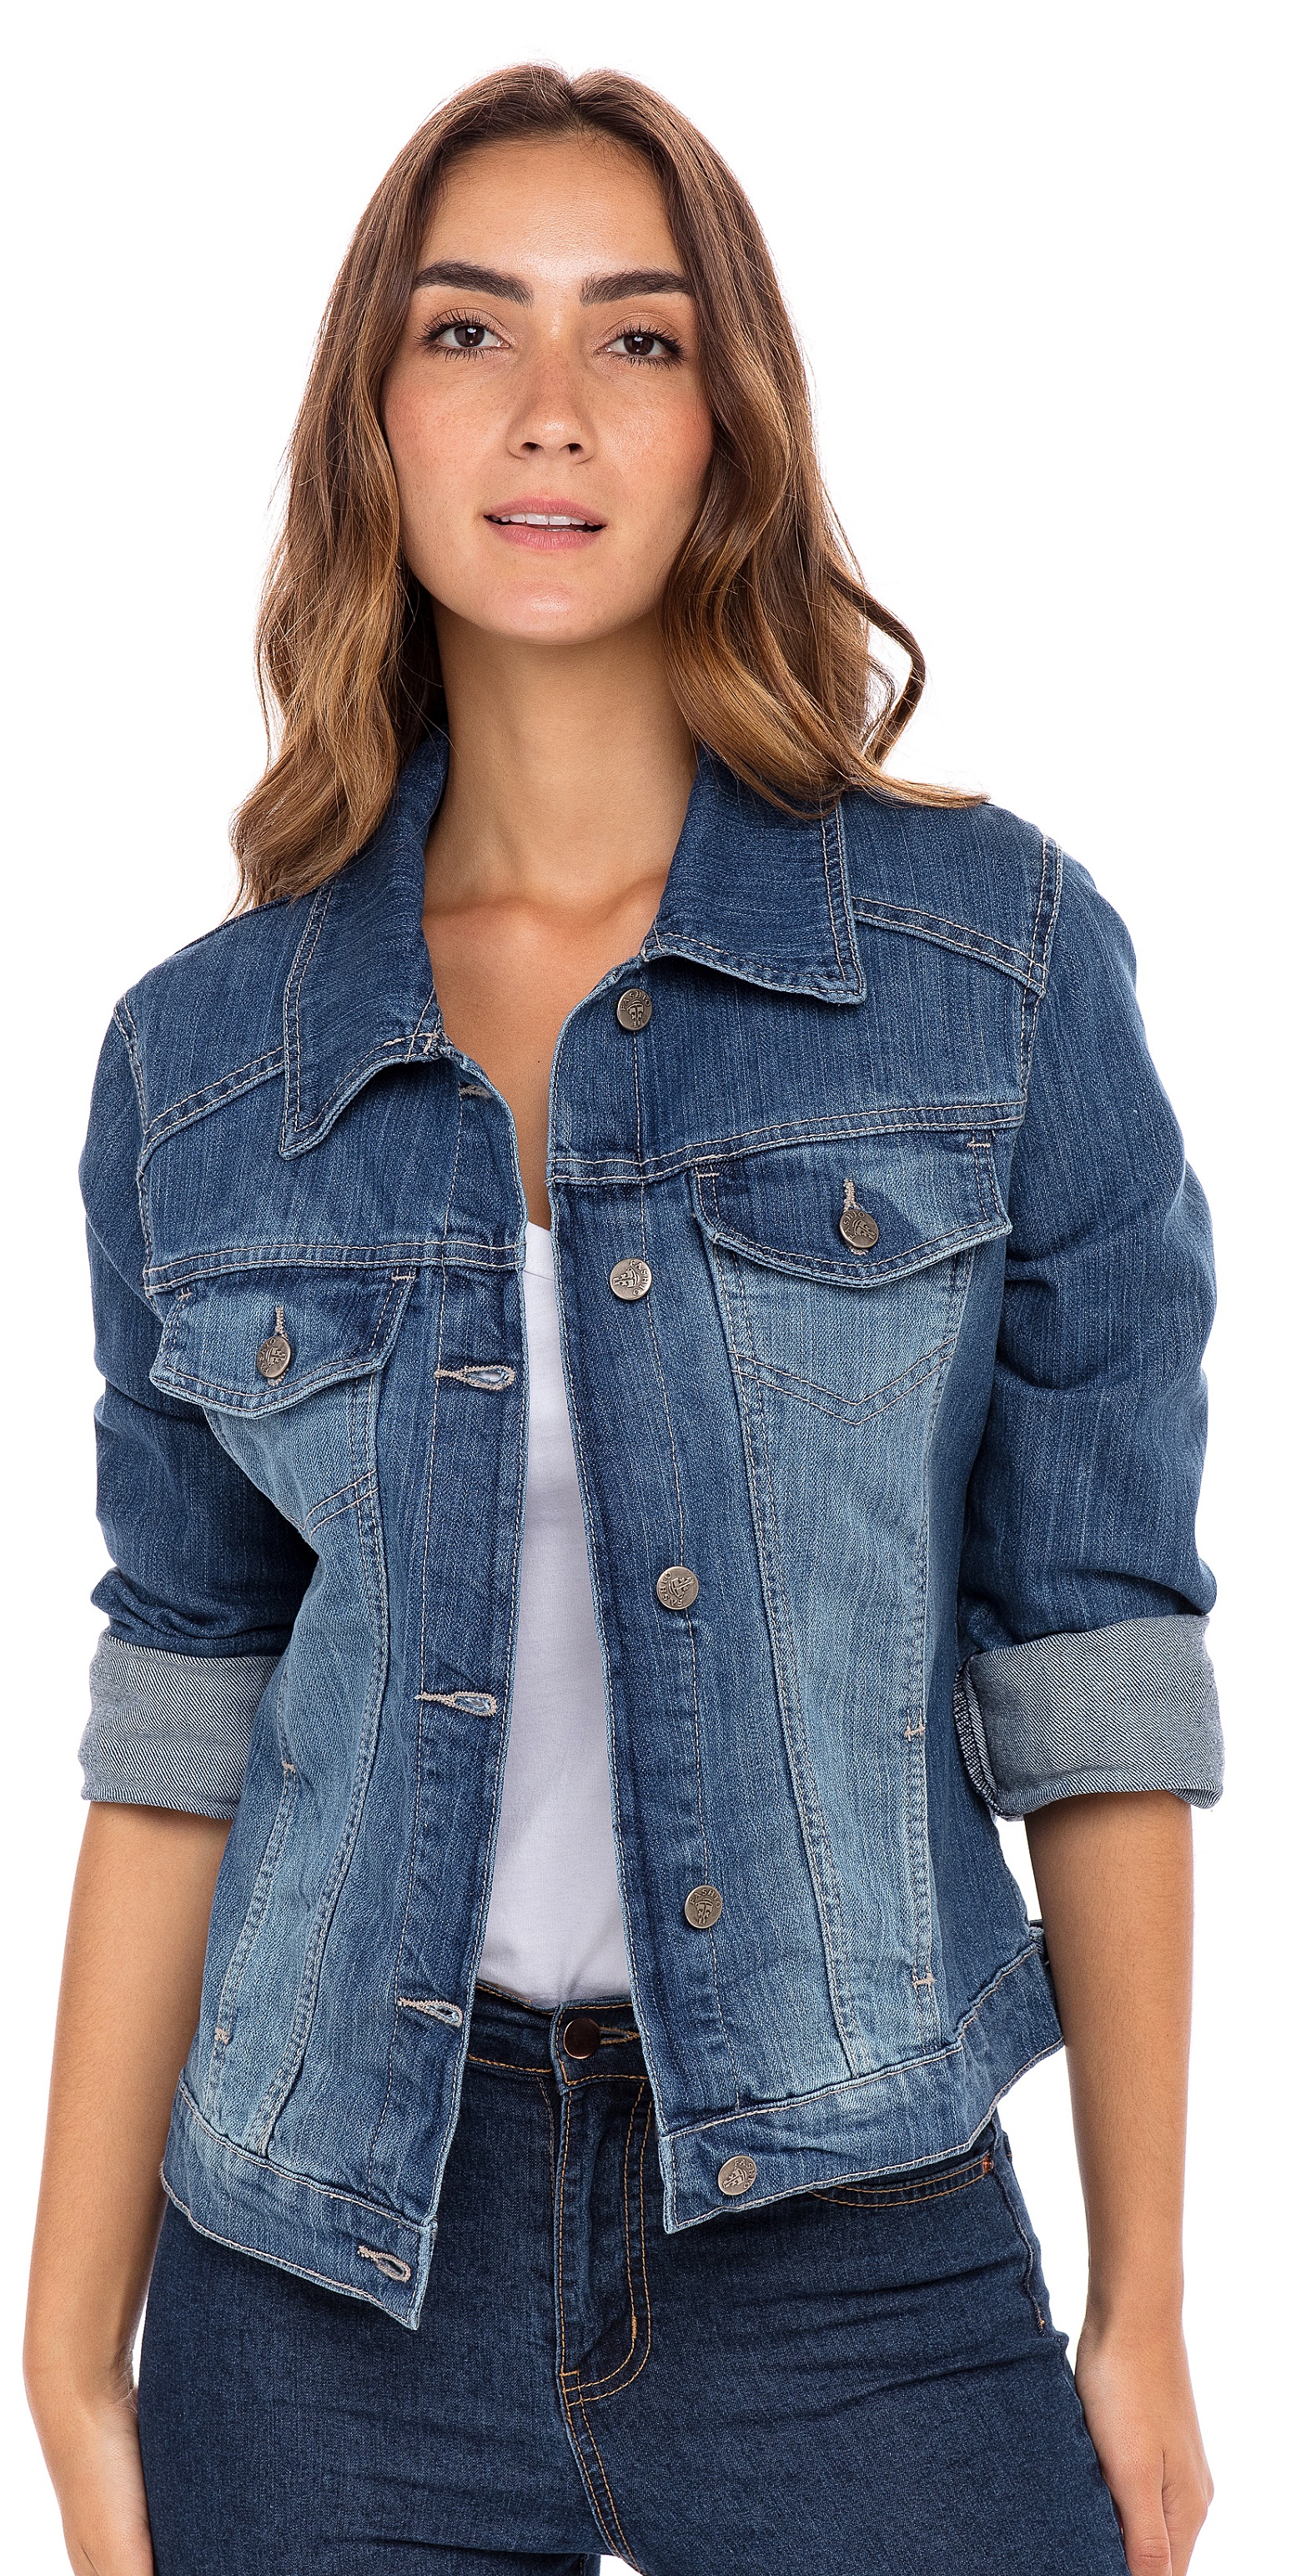 SKYLINEWEARS Women Denim Jacket Button UP Long Sleeve Ladies Stretch Trucker Jean Jackets - image 1 of 5